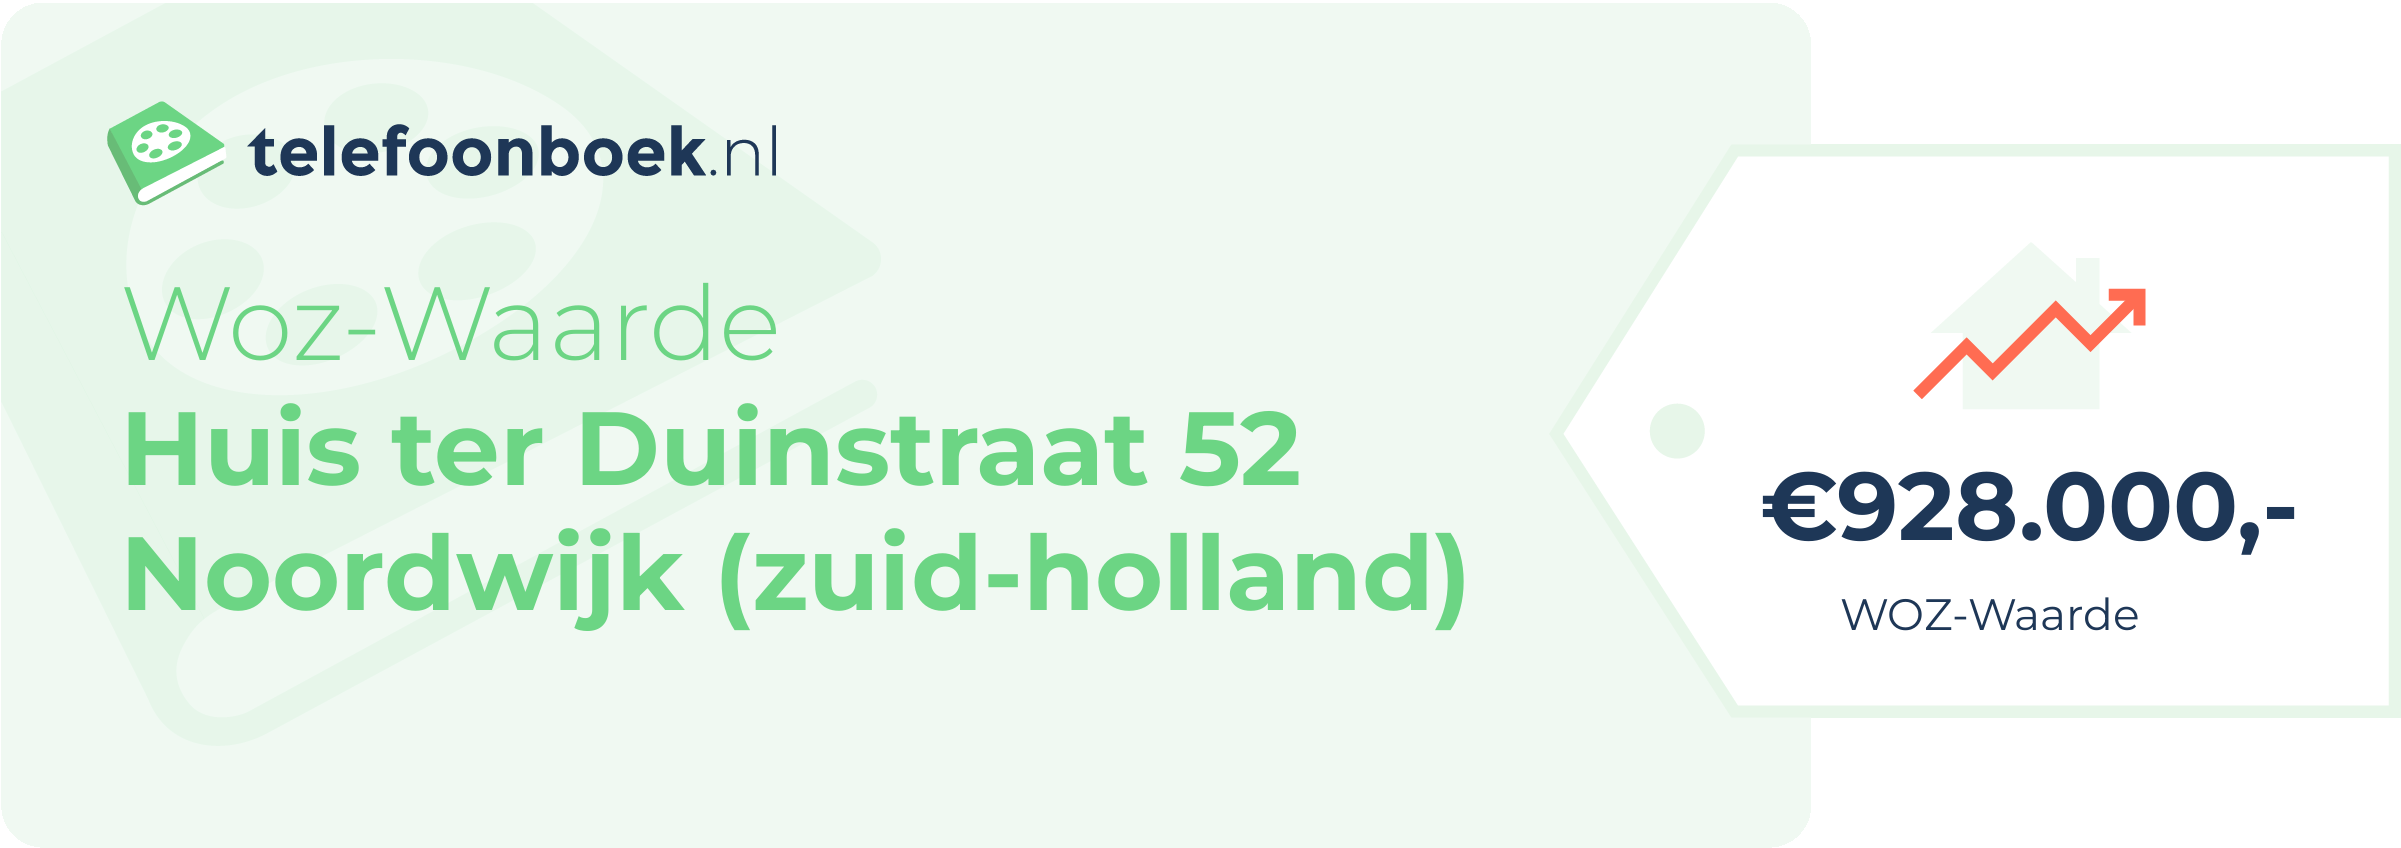 WOZ-waarde Huis Ter Duinstraat 52 Noordwijk (Zuid-Holland)